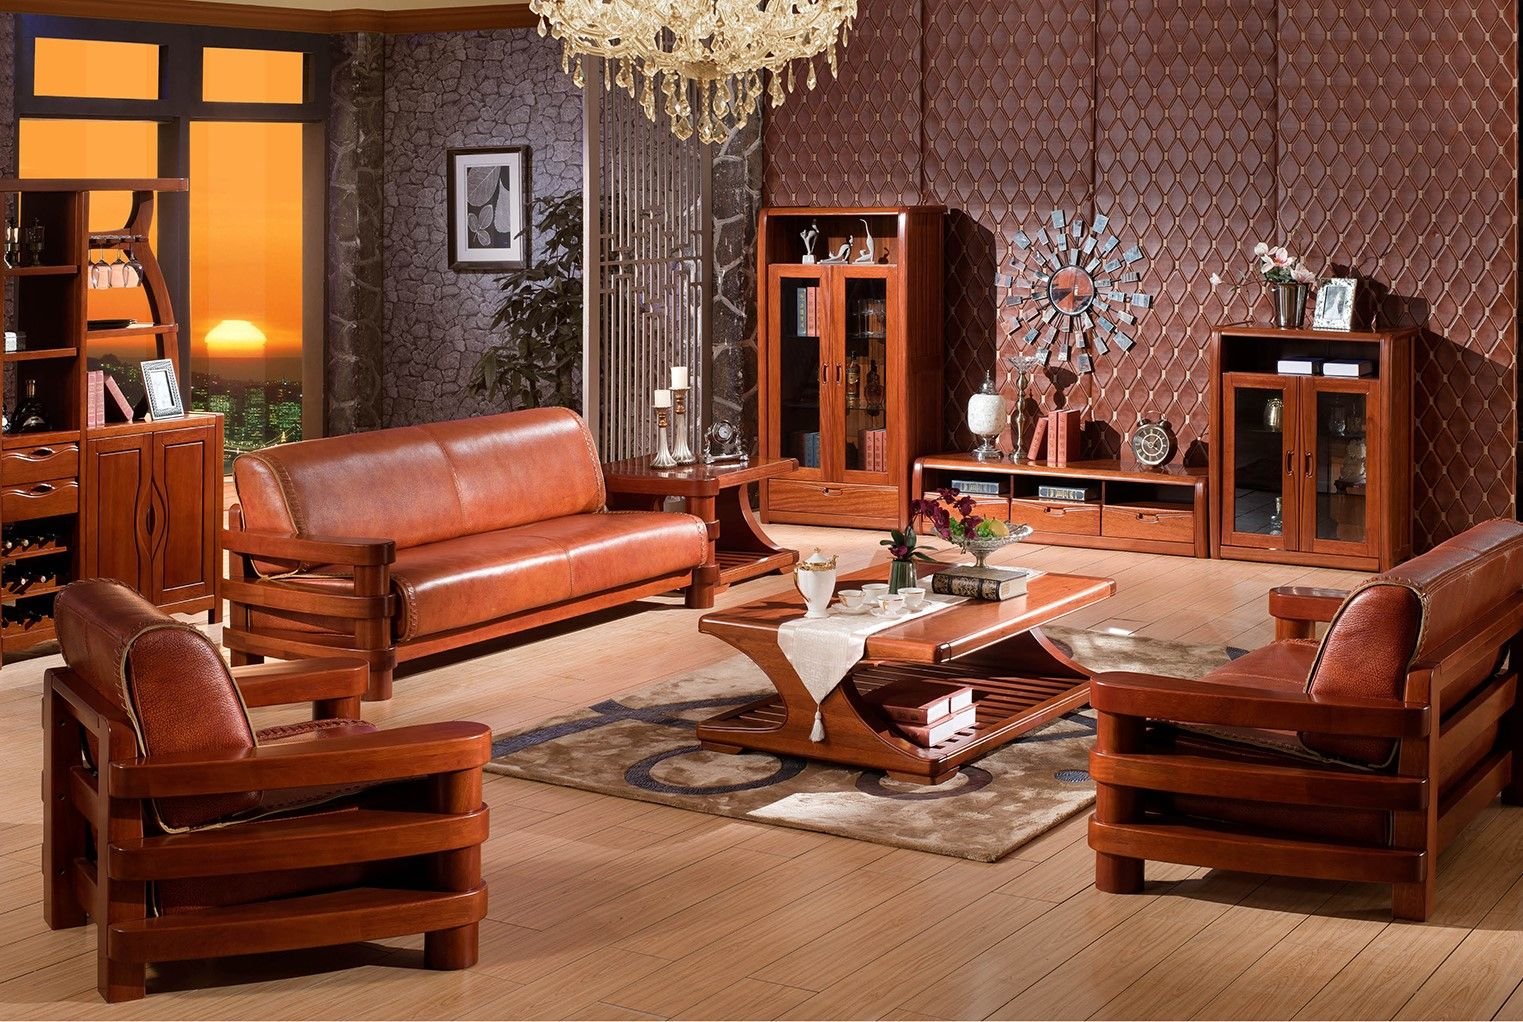 Wooden мебель. Современная деревянная мебель. Современная мебель из красного дерева. Мебель из красного дерева в интерьере. Мебель из красного ЛЕРЕВ.